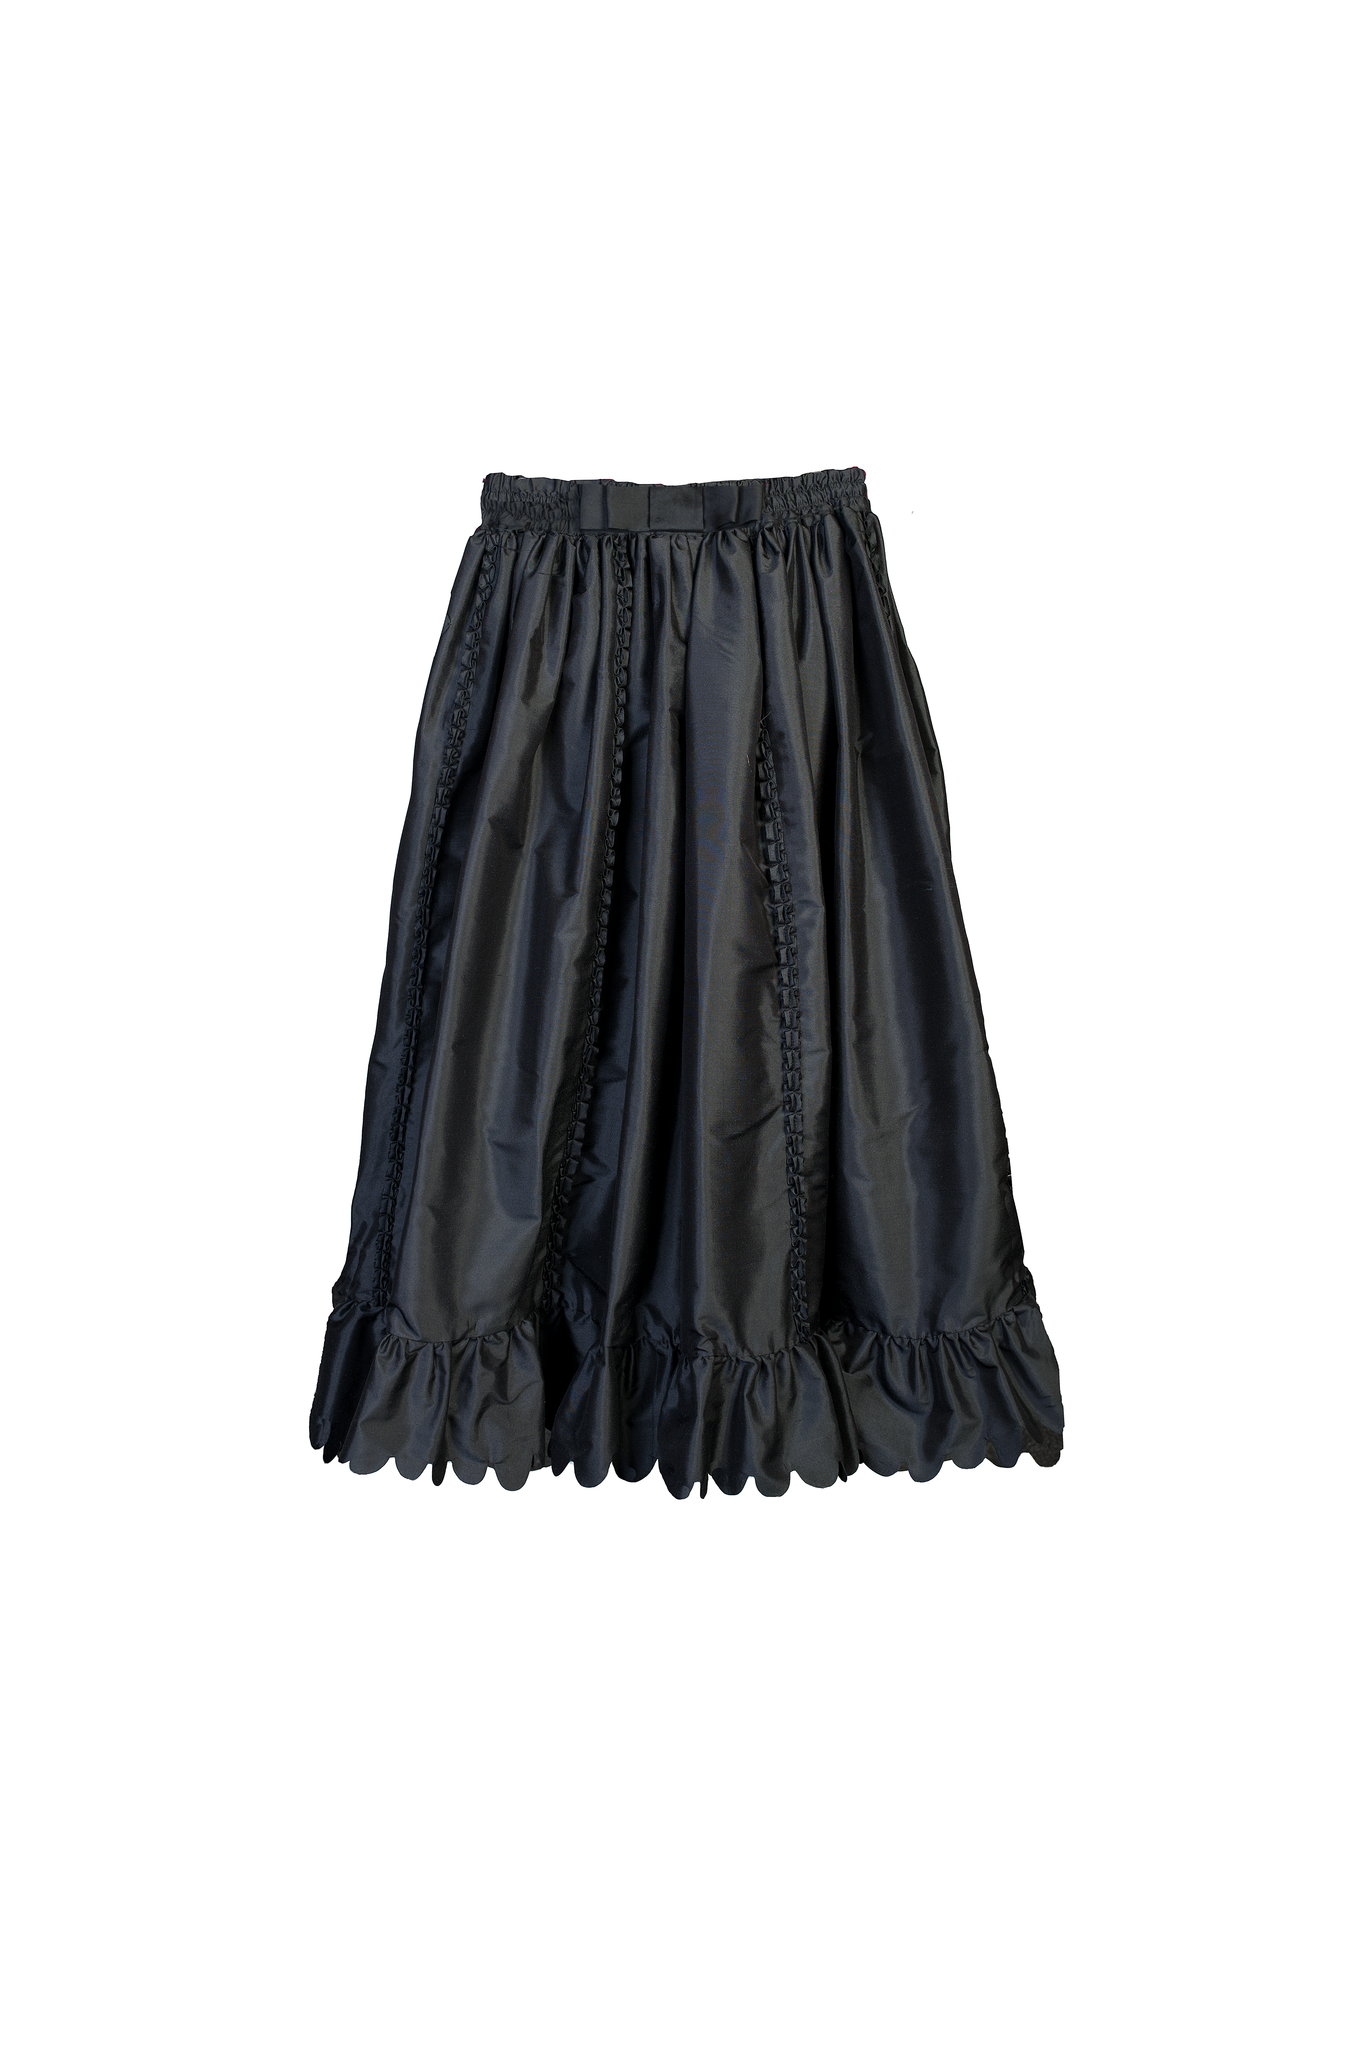 ANTOINETTE skirt – HORROR VACUI